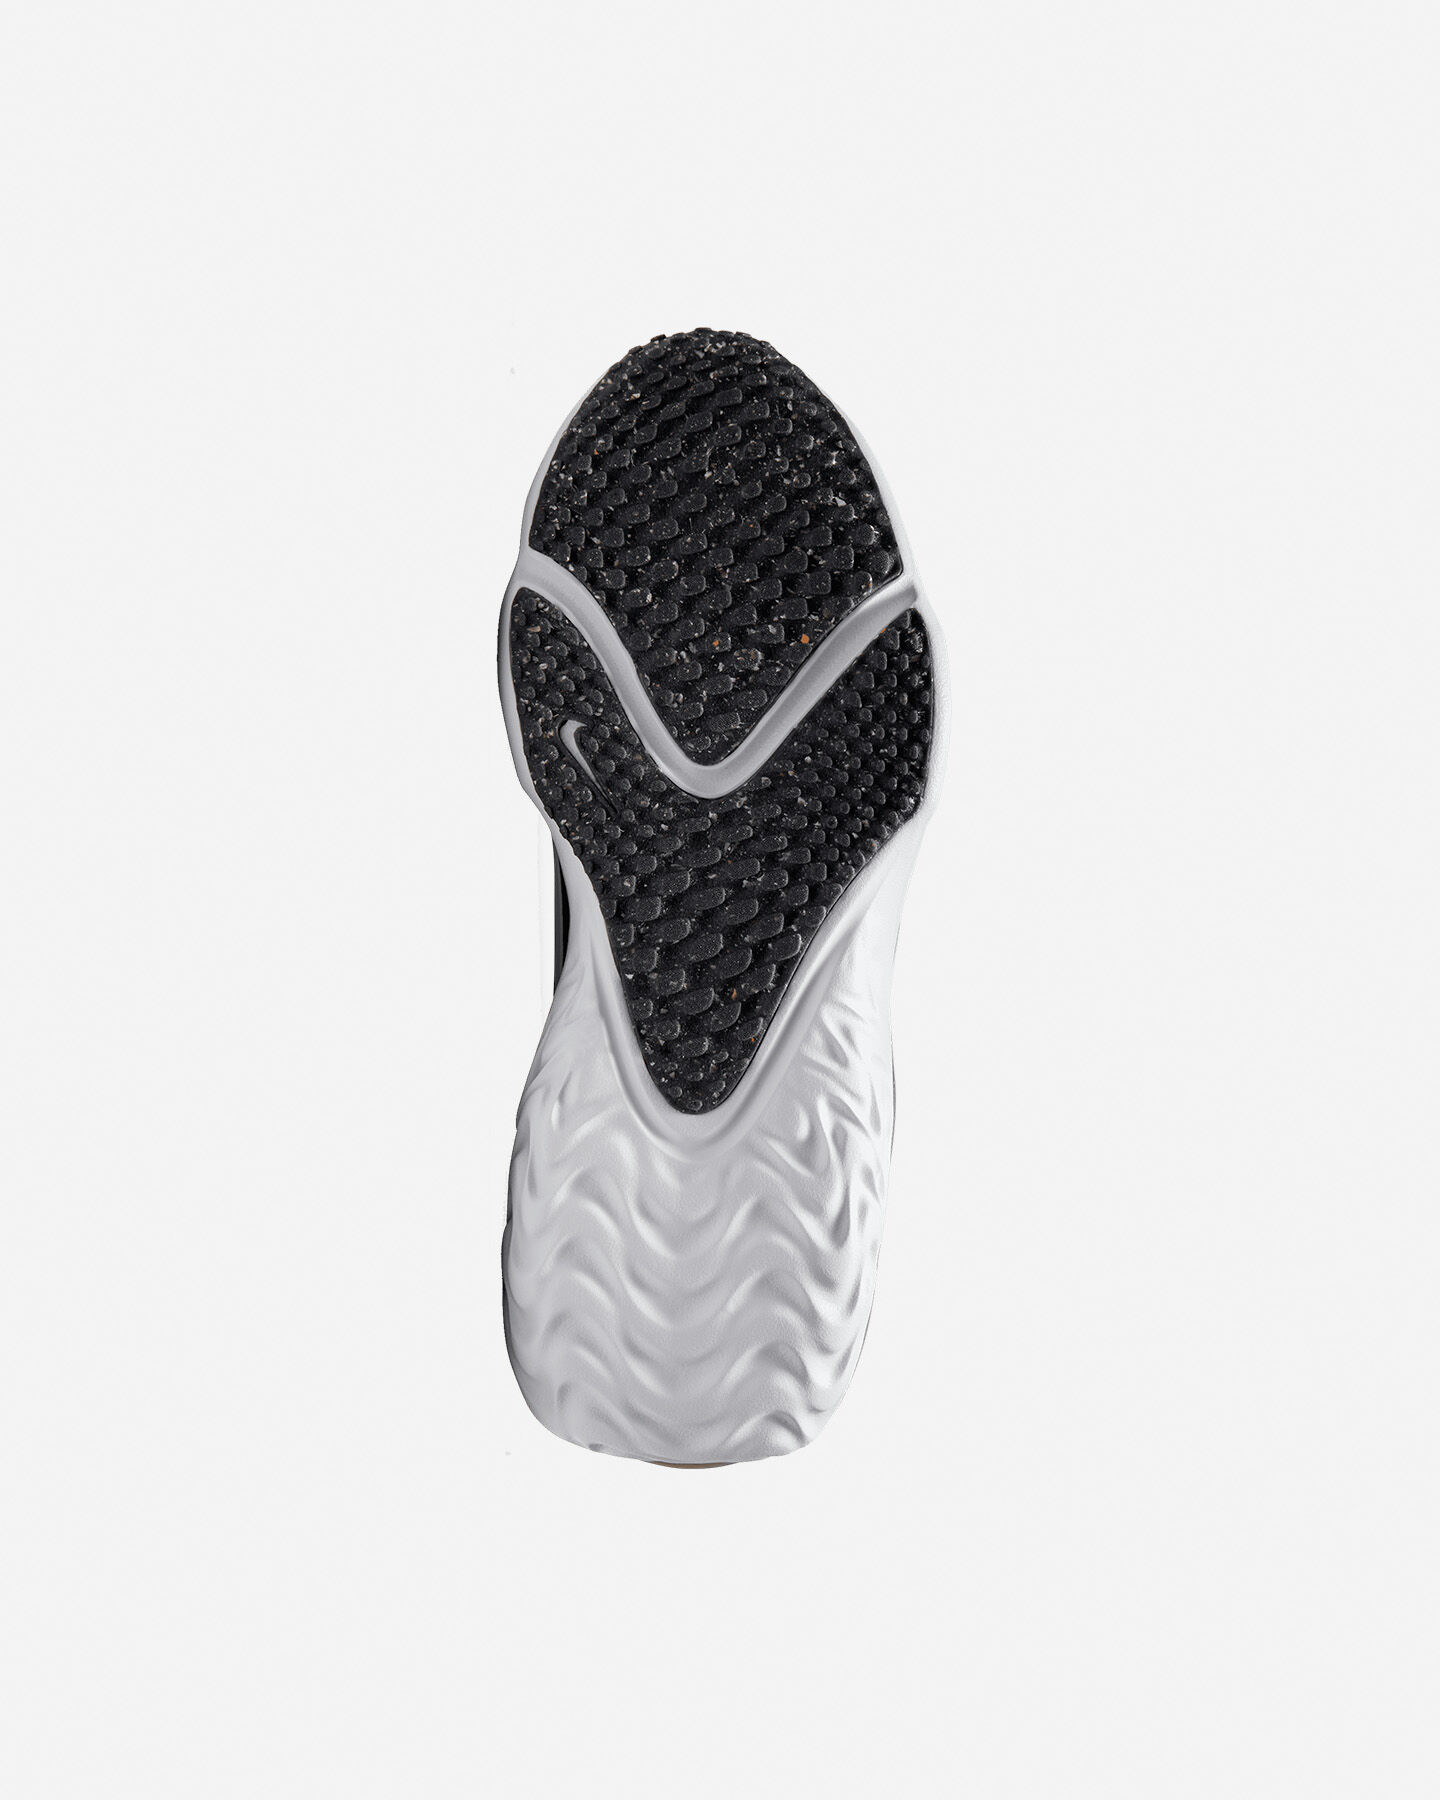  Scarpe sneakers NIKE RUN FLOW GS JR S5539553|001|4Y scatto 2